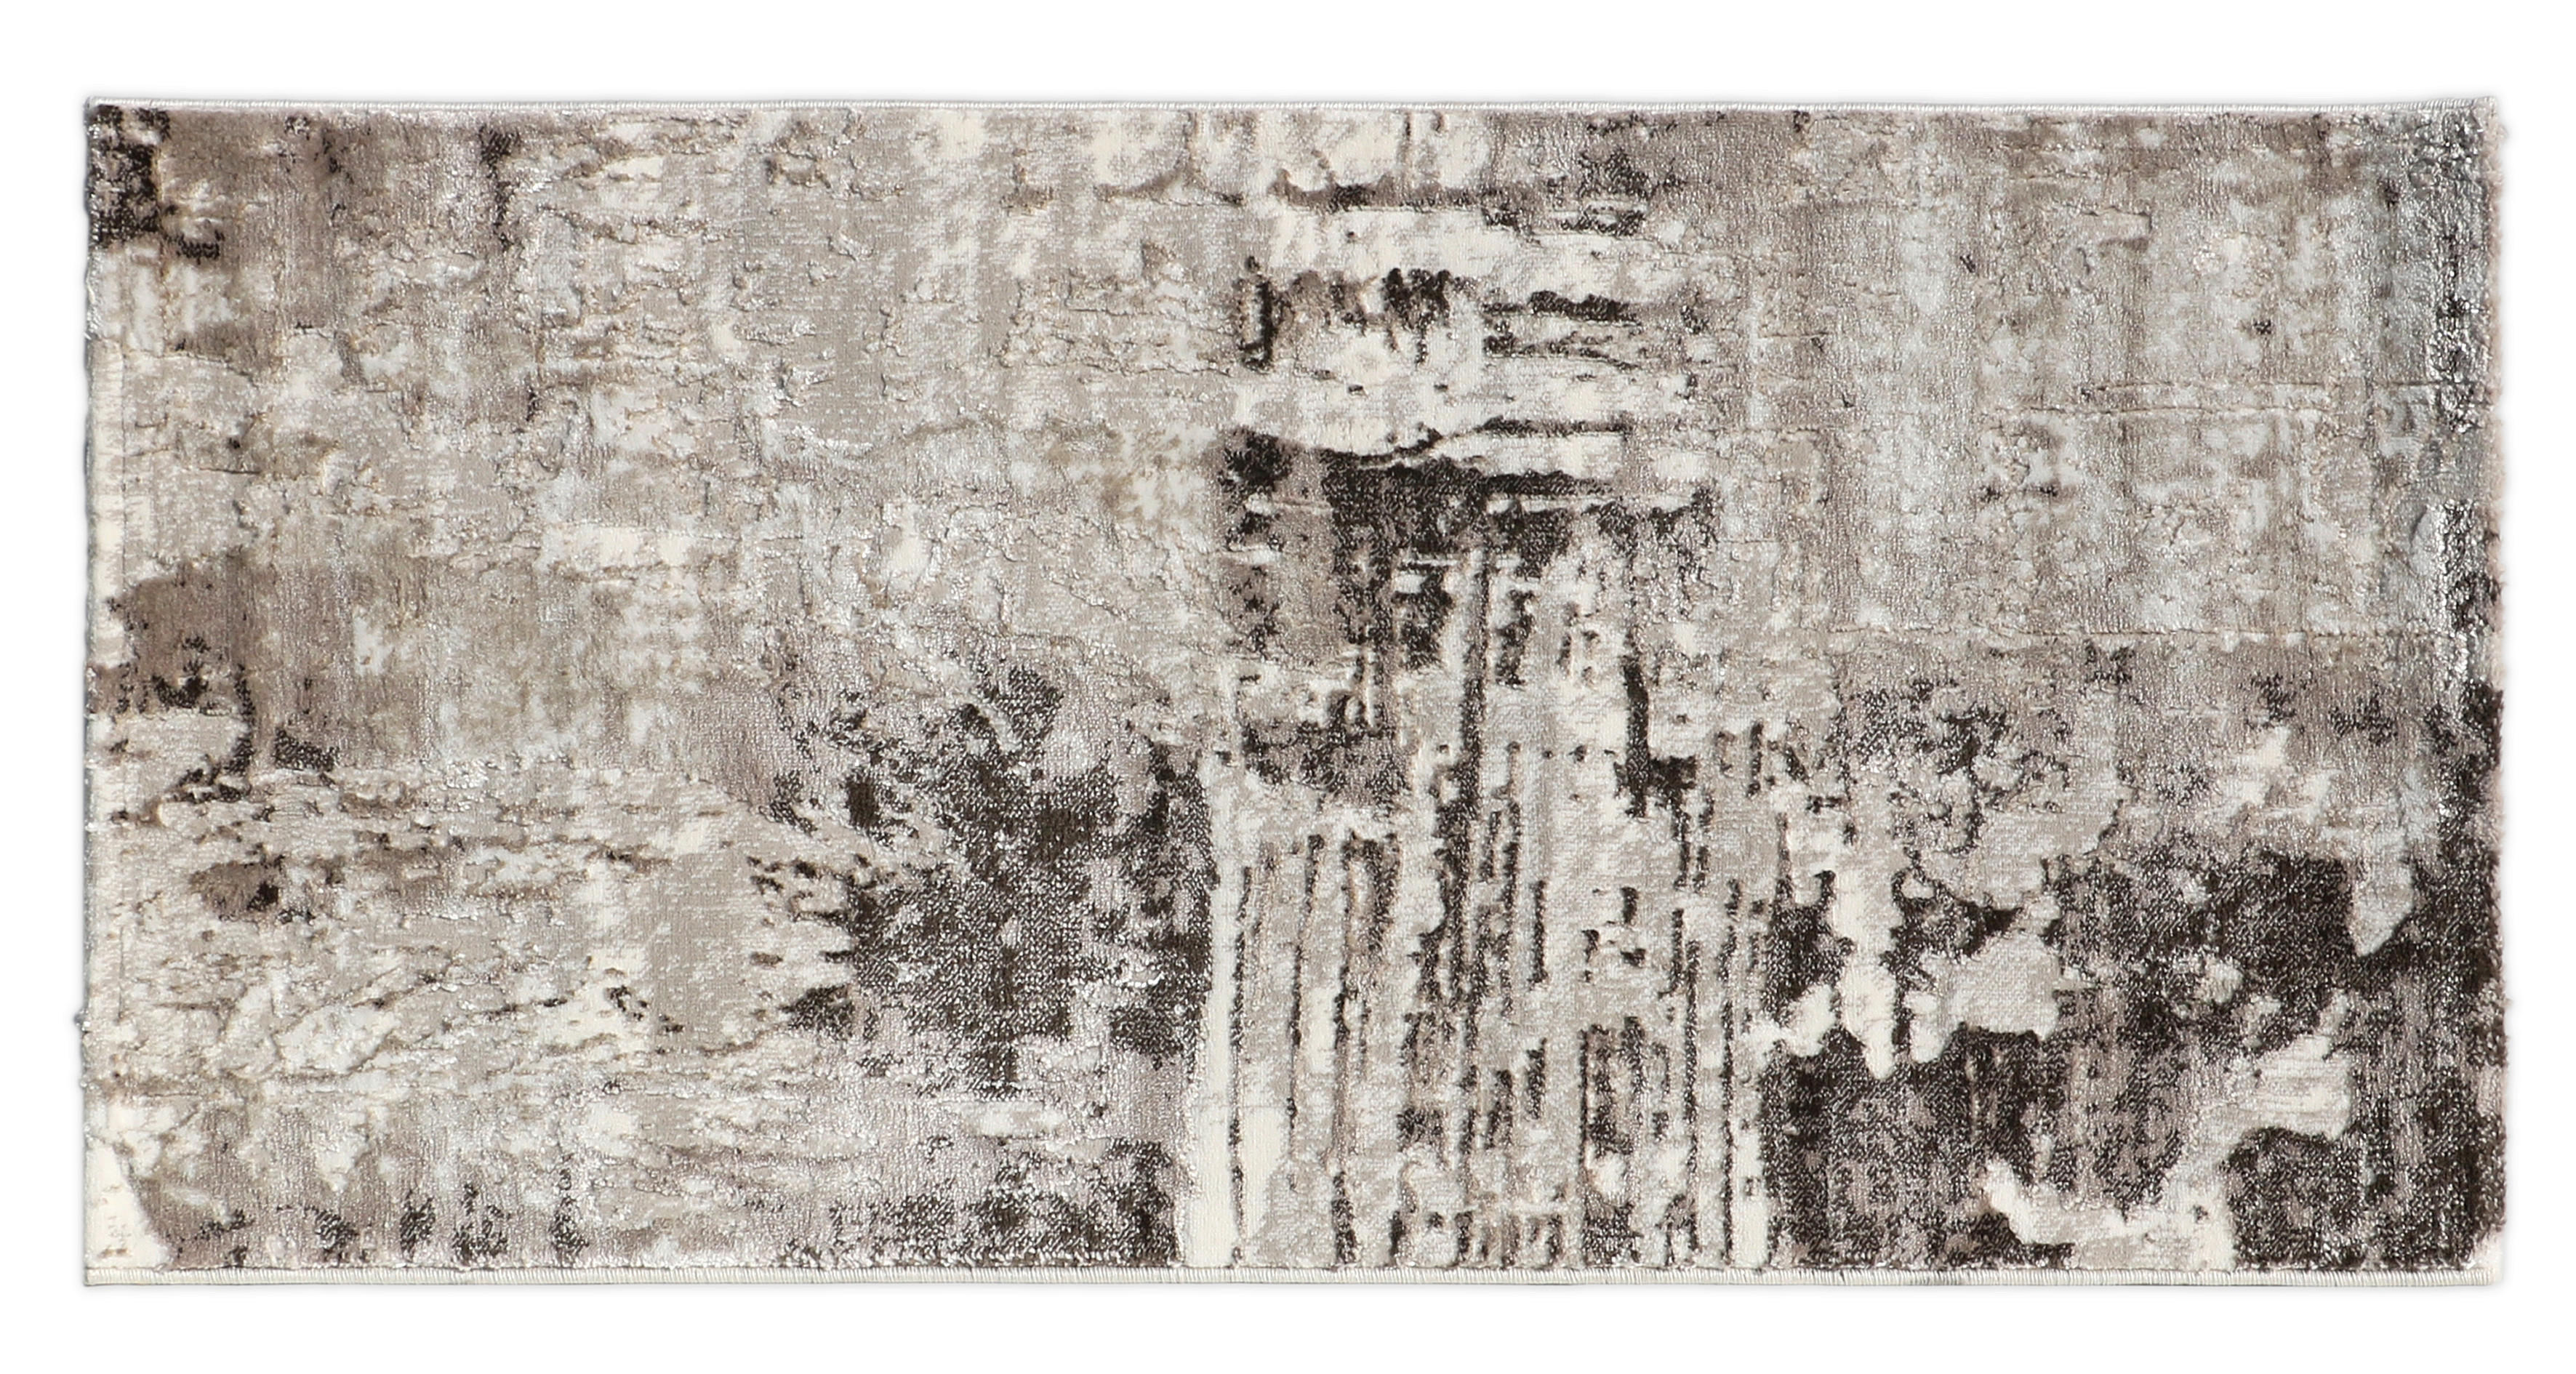 KOBEREC TKANÝ NA PLOCHO, 160/230 cm, šedá, béžová - šedá,béžová - textil